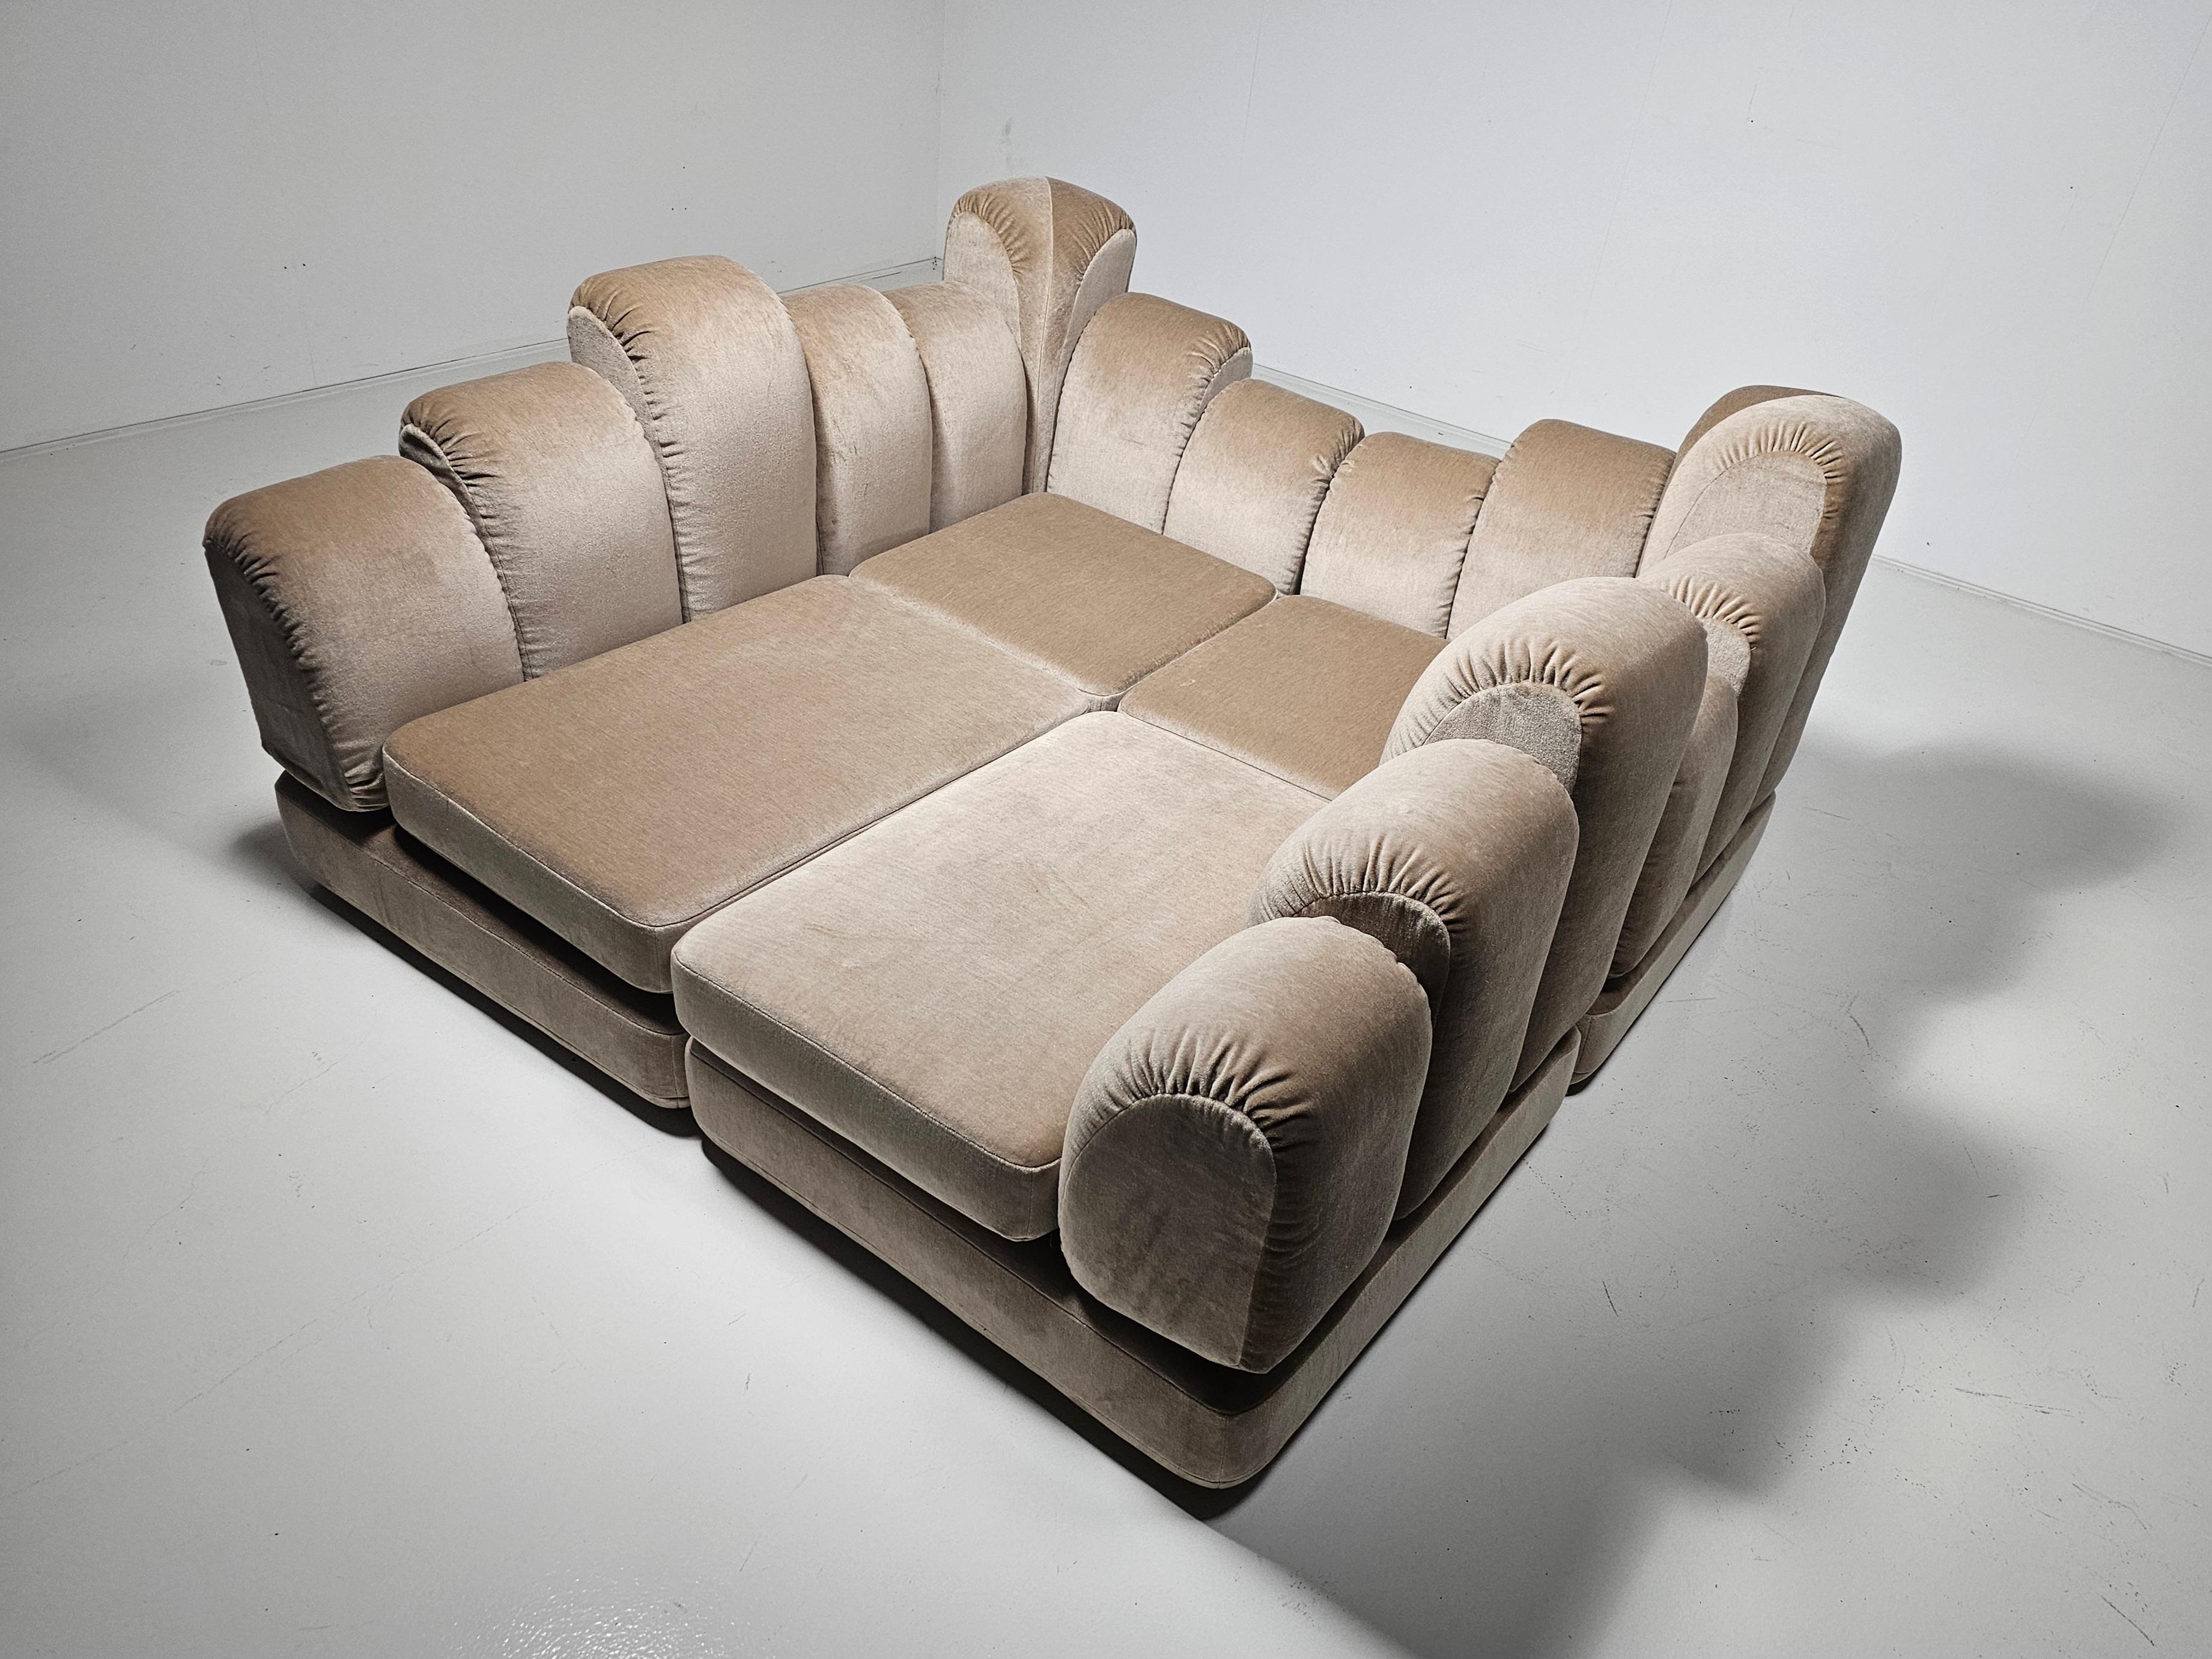 Mohair Hans Hopfer 'Dromadaire' Sectional Sofa in beige mohair velvet, Roche Bobois For Sale